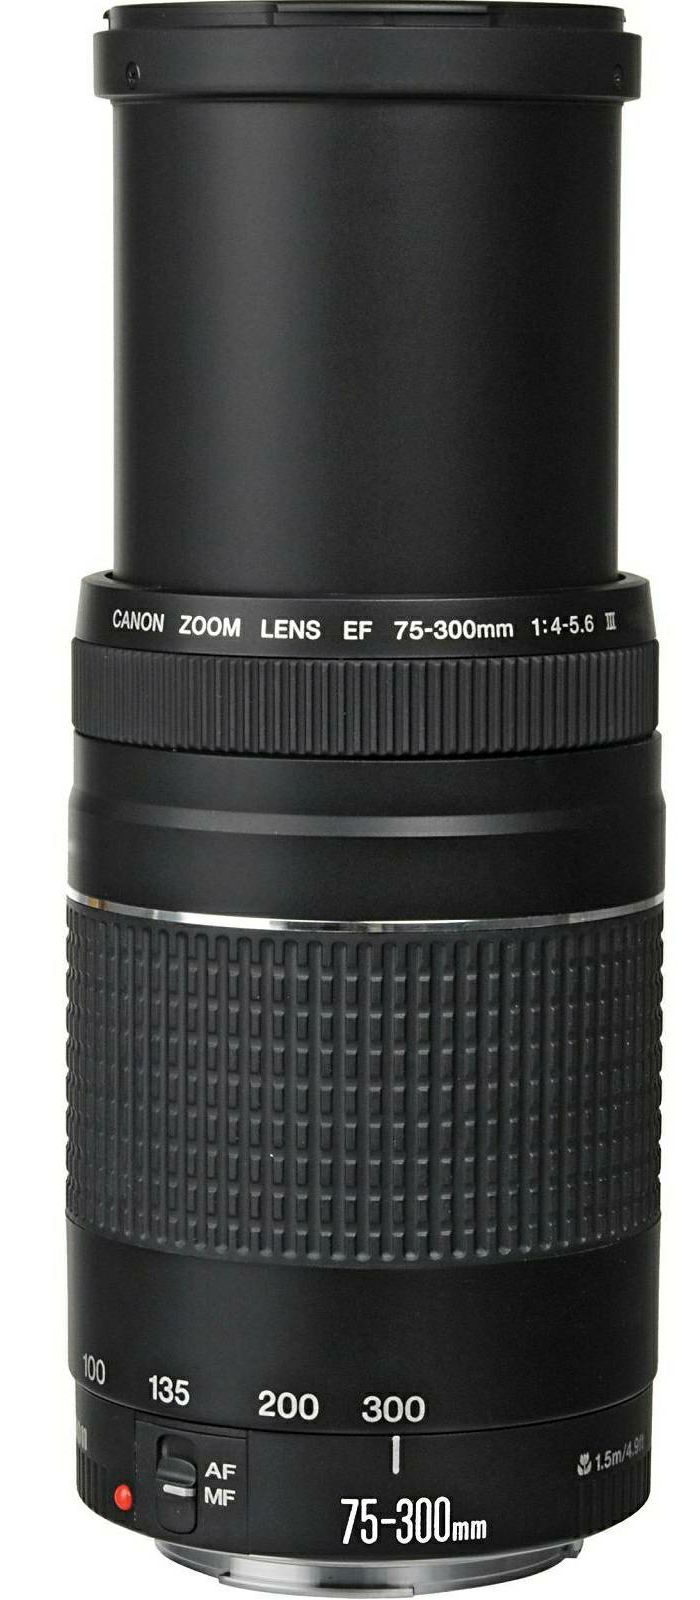 Canon EOS 2000D + 18-55 IS II + 75-300 KIT Black DSLR Digitalni fotoaparat s objektivima EF-S 18-55mm f/3.5-5.6 EF 75-300mm f/4-5.6 III (2728C031AA) - CASH BACK